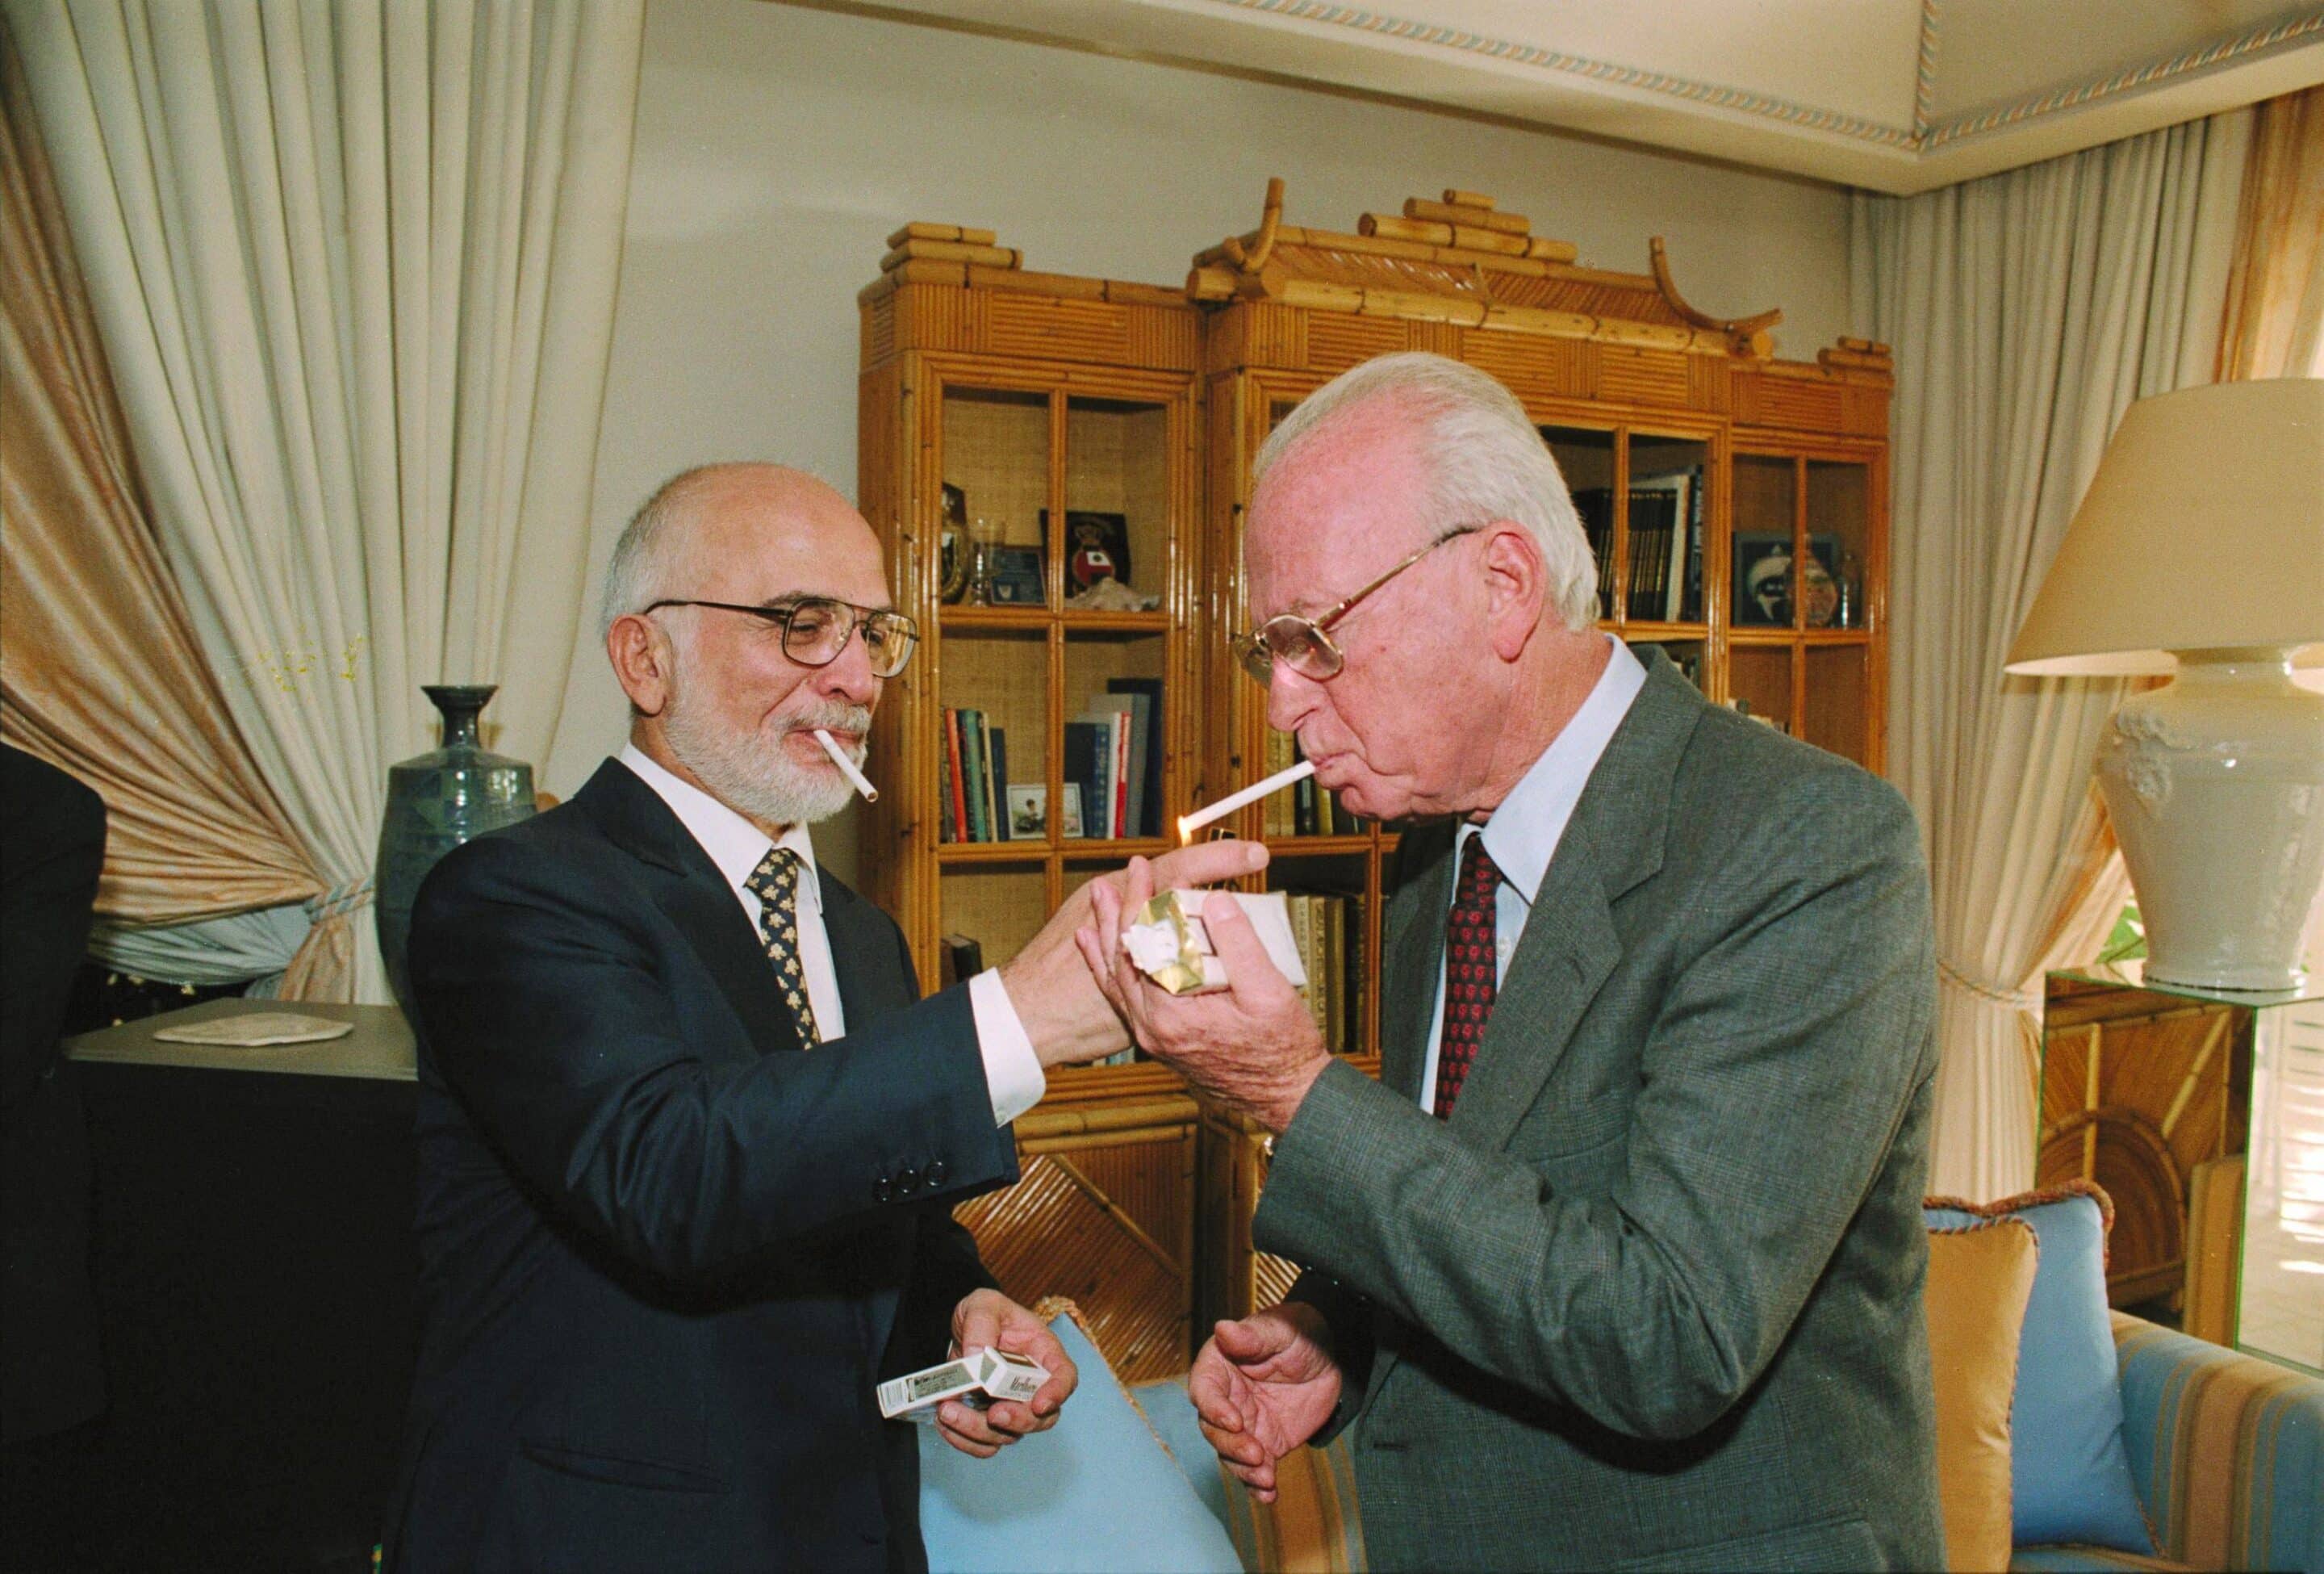 Le roi Hussein allume la cigarette d'Yitzhak Rabin, peu après la signature du traité de paix de 1994.
(c) wikipédia